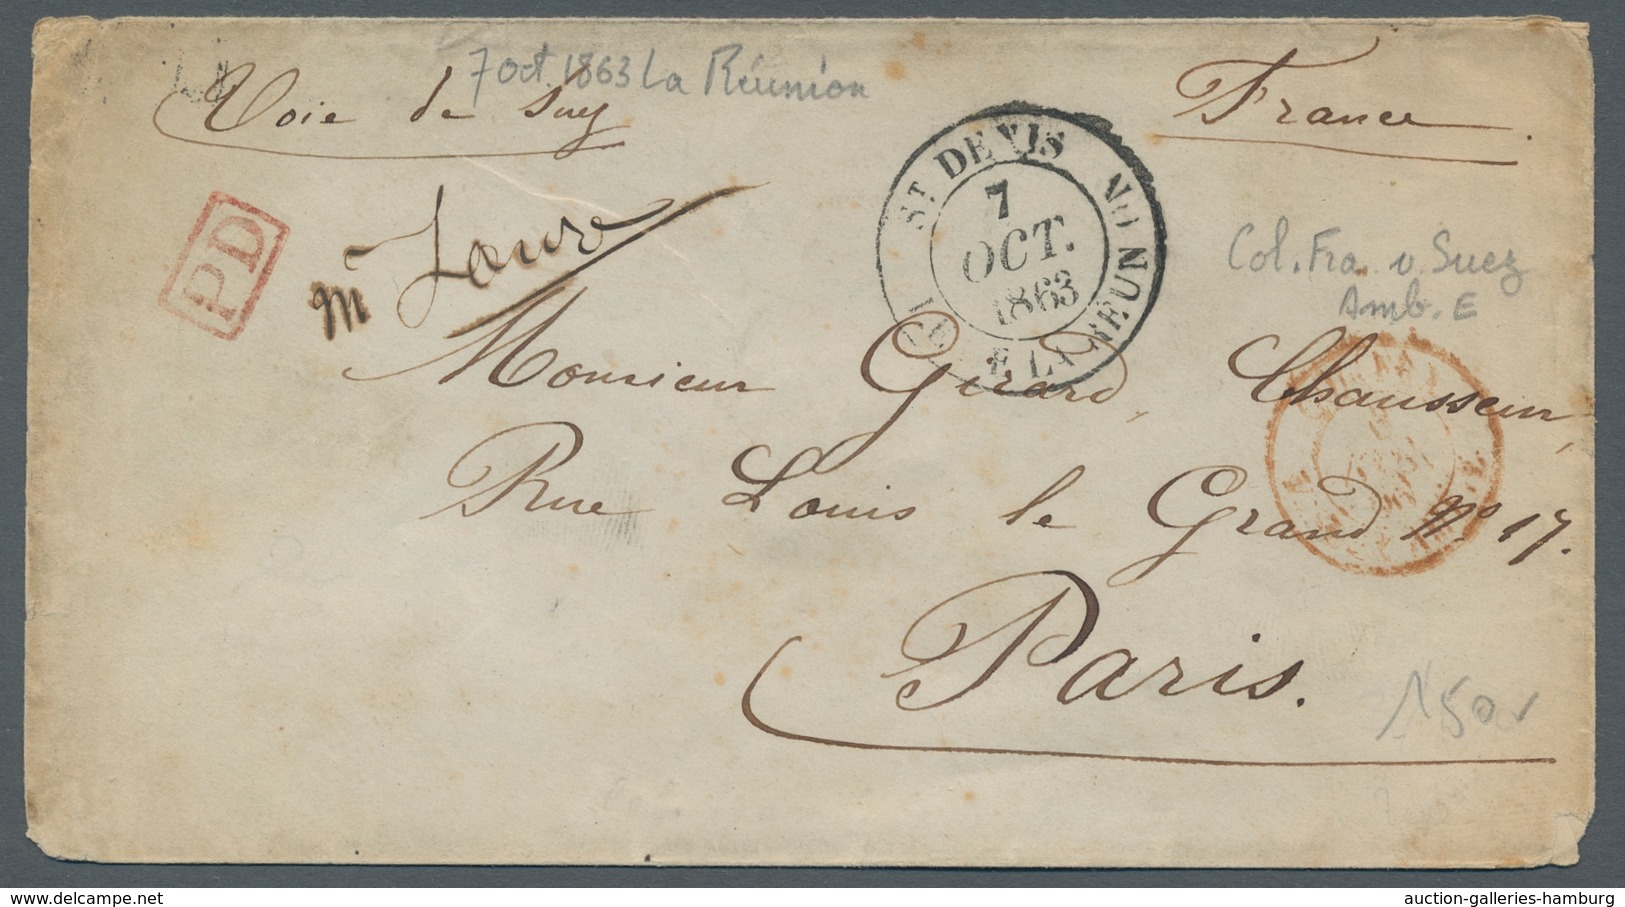 Reunion: 1820-66, interessante Sammlung von 122 markenlosen Altbriefen in zwei Briefealben mit diver